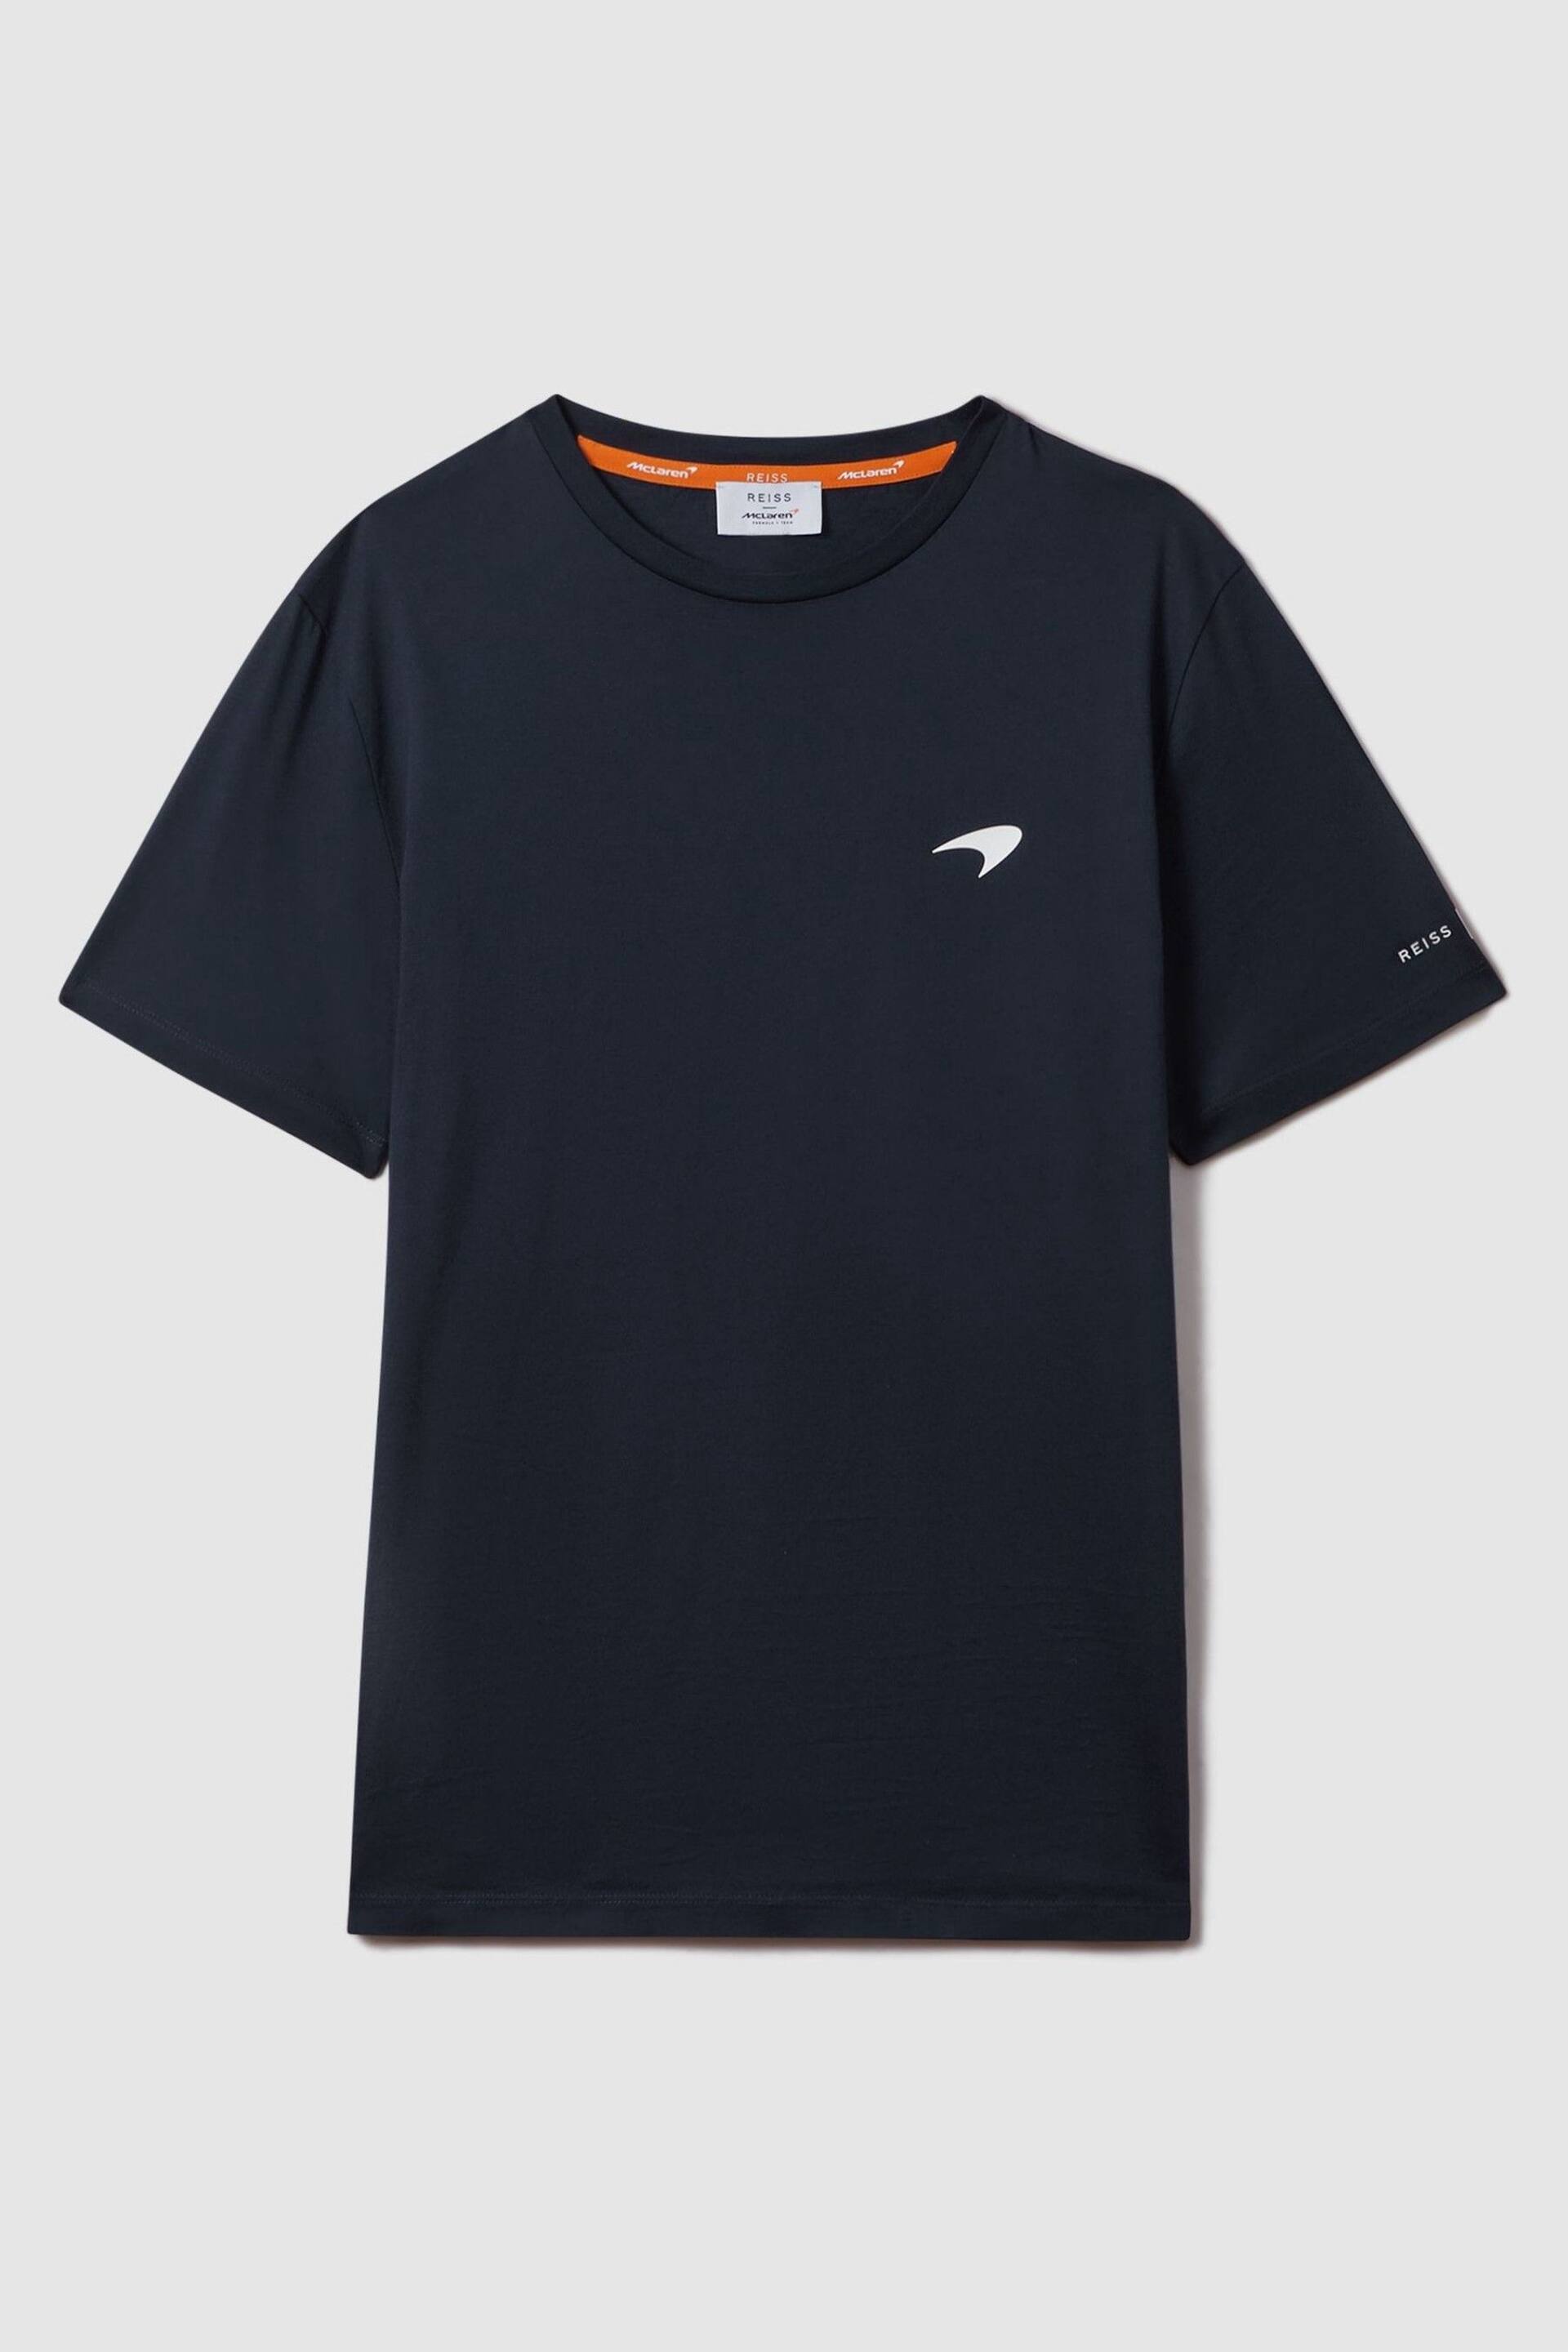 McLaren F1 Mercerised Cotton Crew Neck T-Shirt - Image 2 of 6